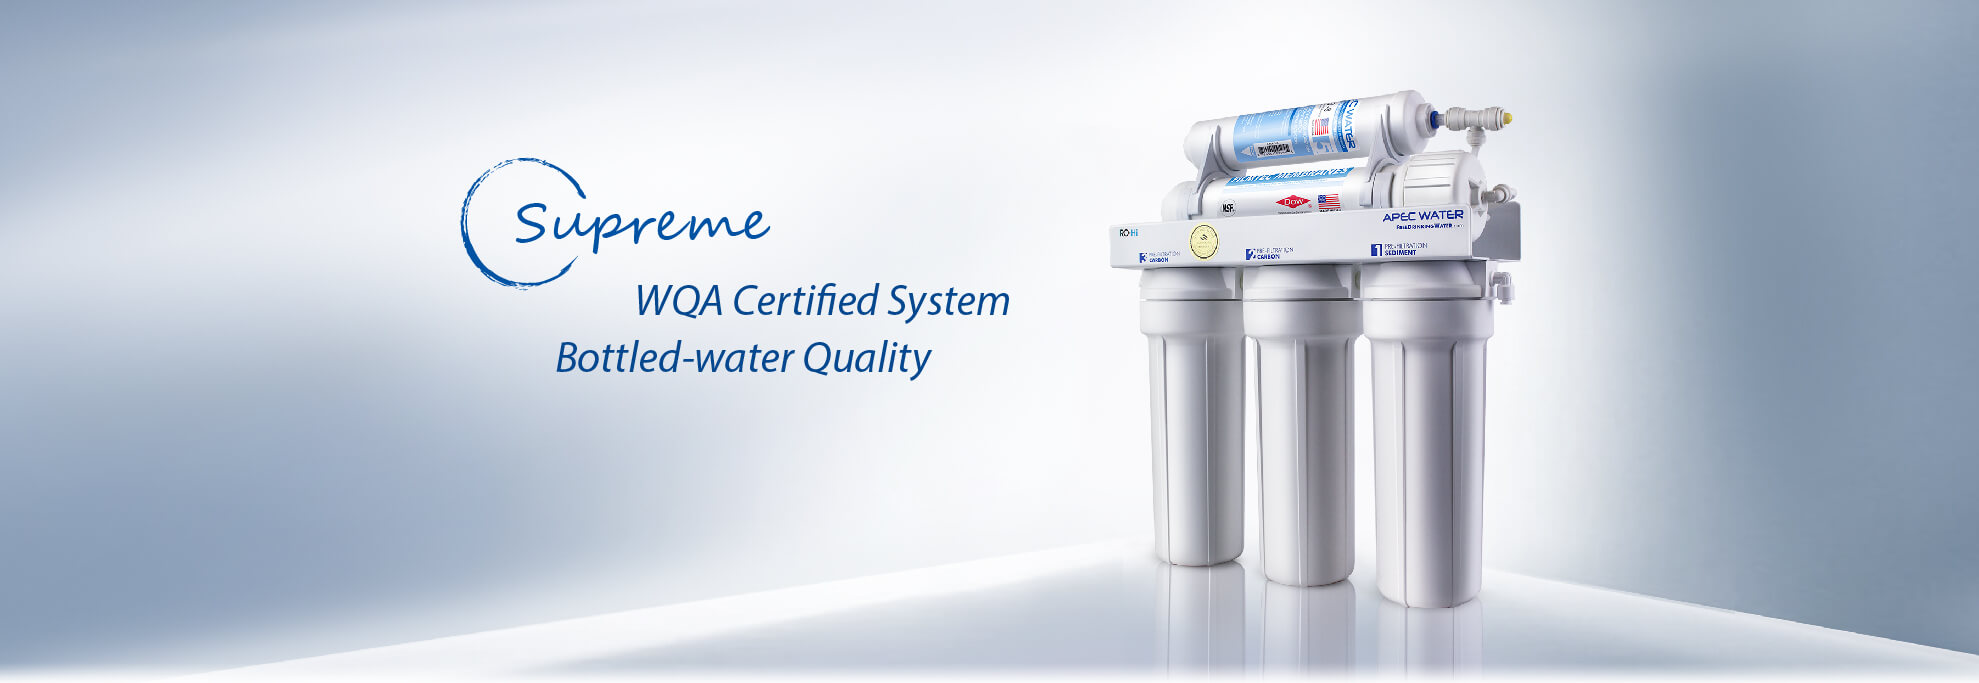 WQA瓶装水质量认证系统